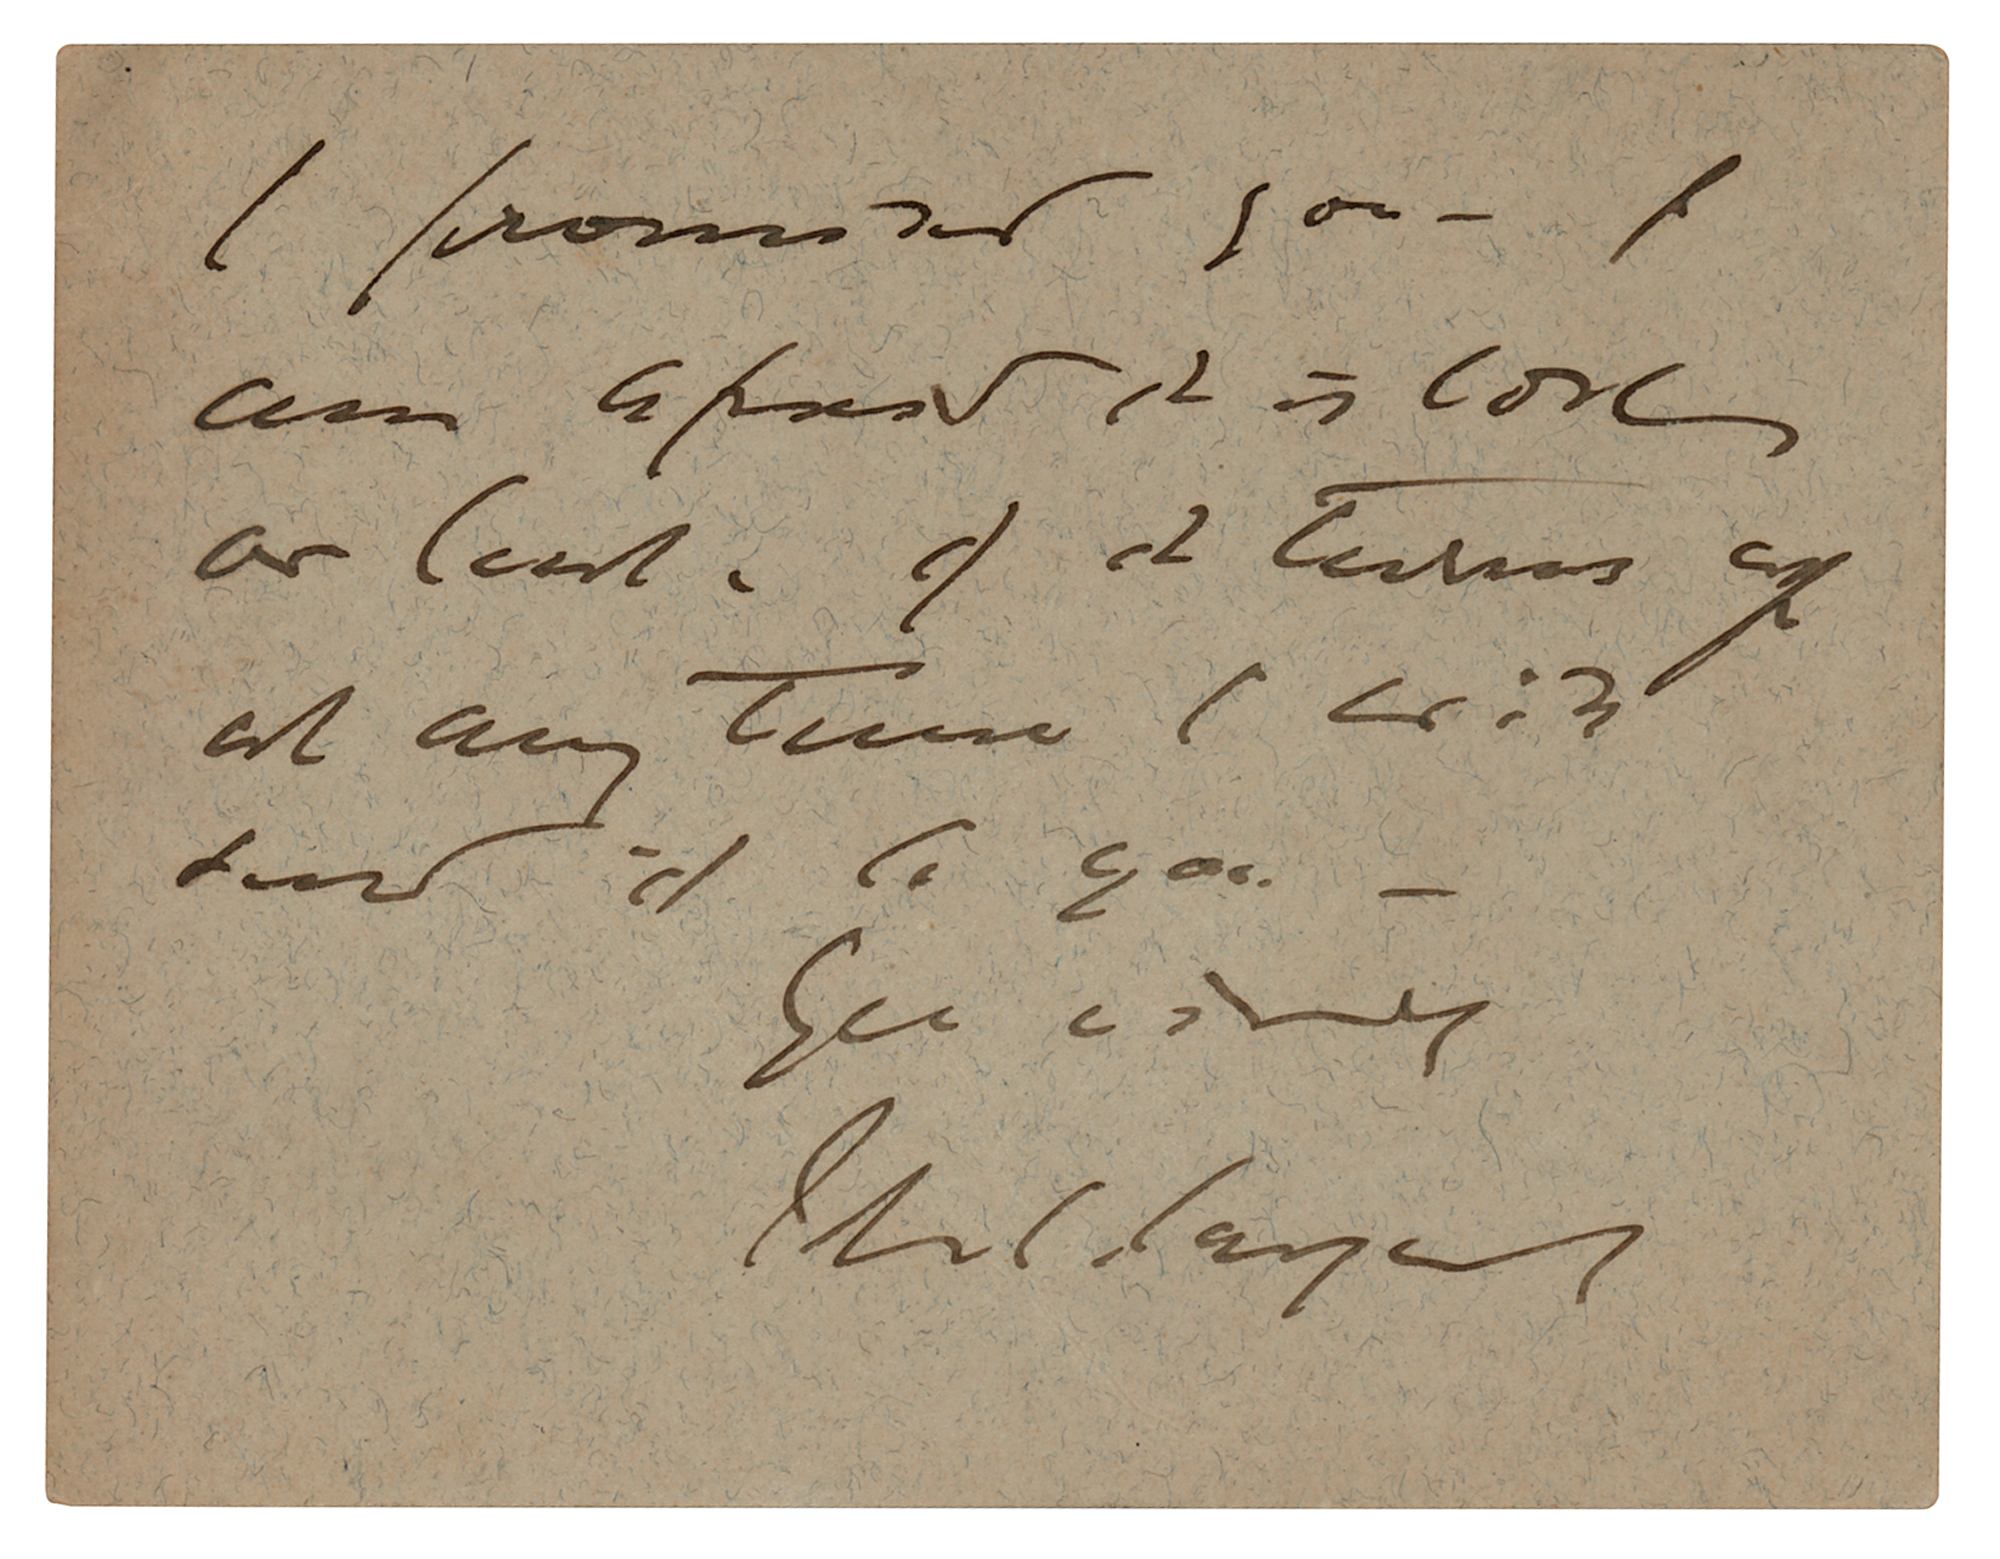 Lot #399 John Singer Sargent Autograph Letter Signed